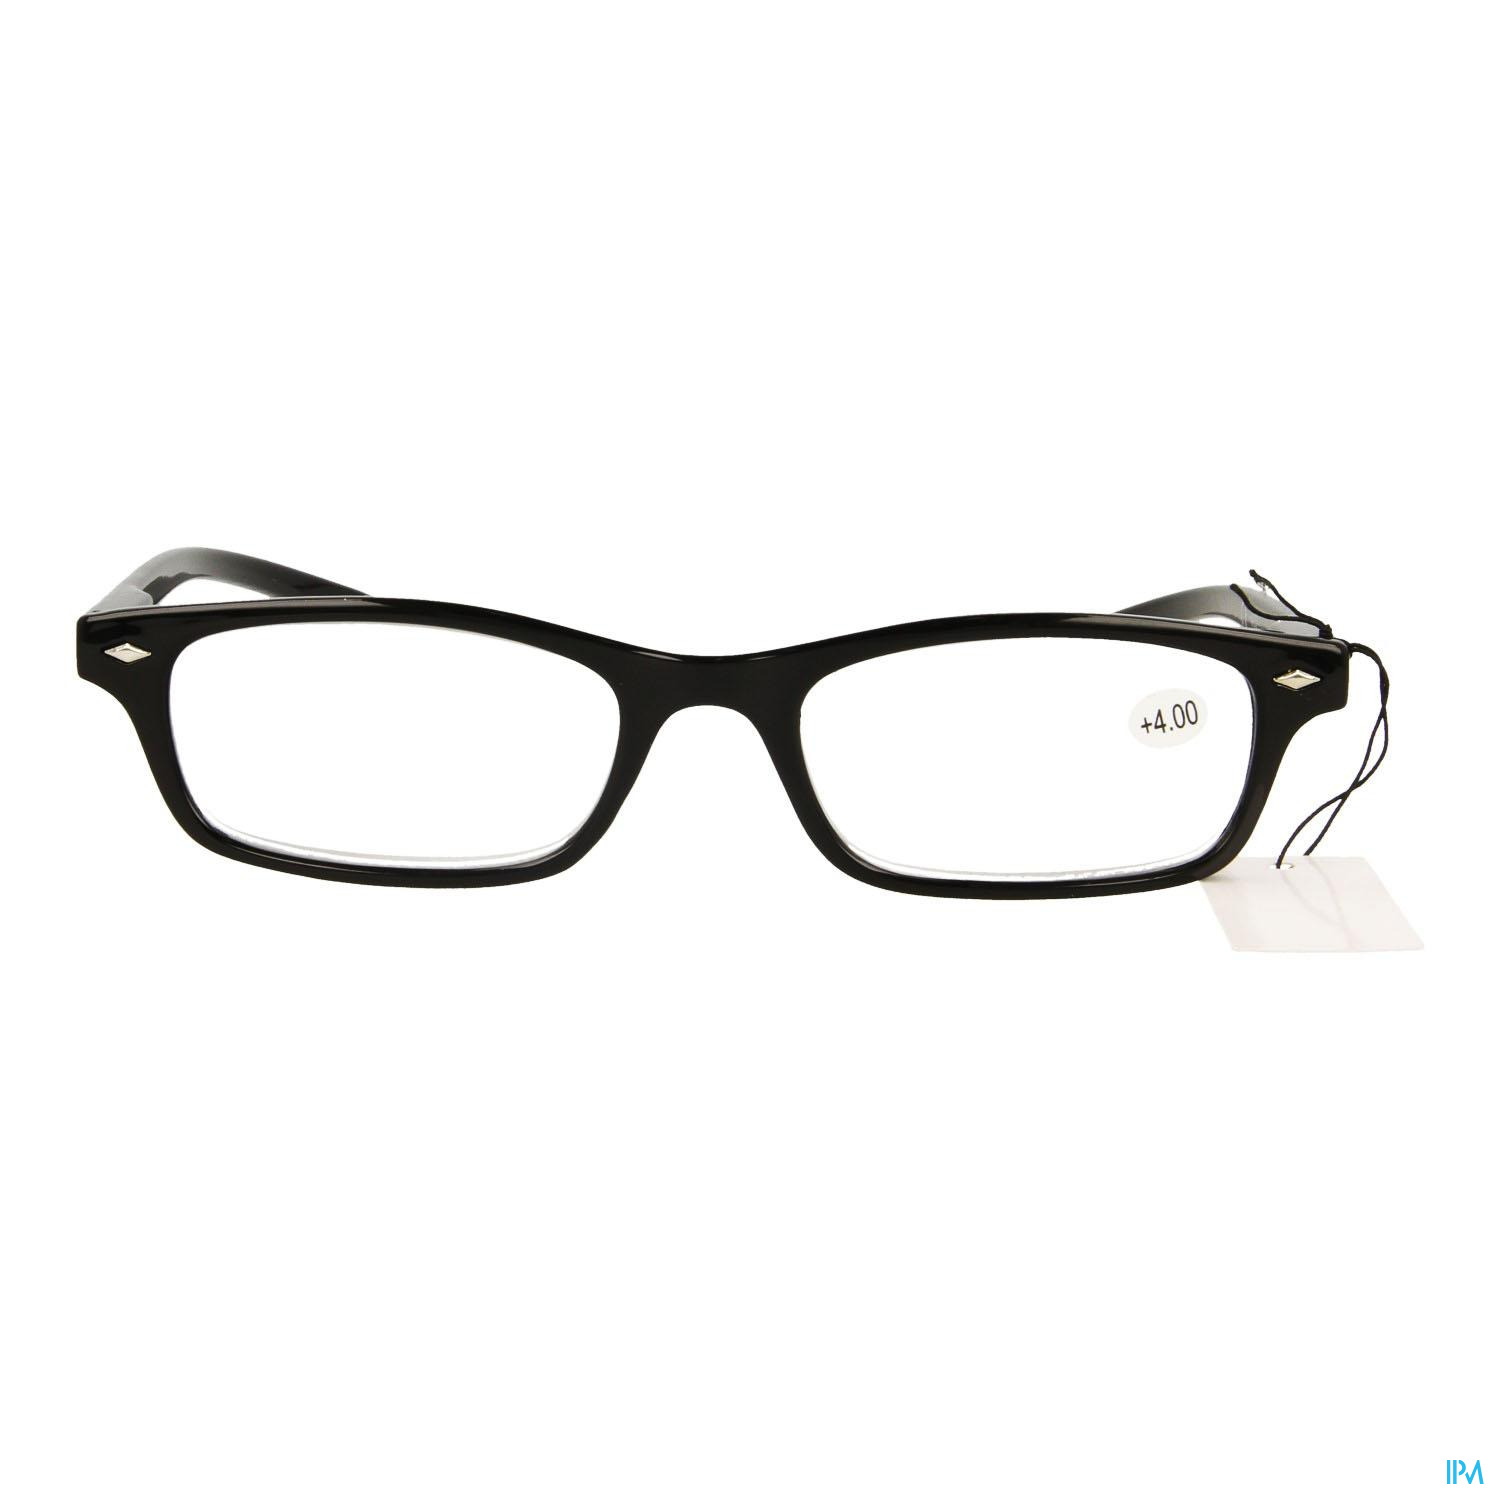 Pharmaglasses Leesbril Diop.+4.00 Black - Brillen - Lensproducten & brillen - & EHBO - Peeters Oudsbergen (Peeters Pharma